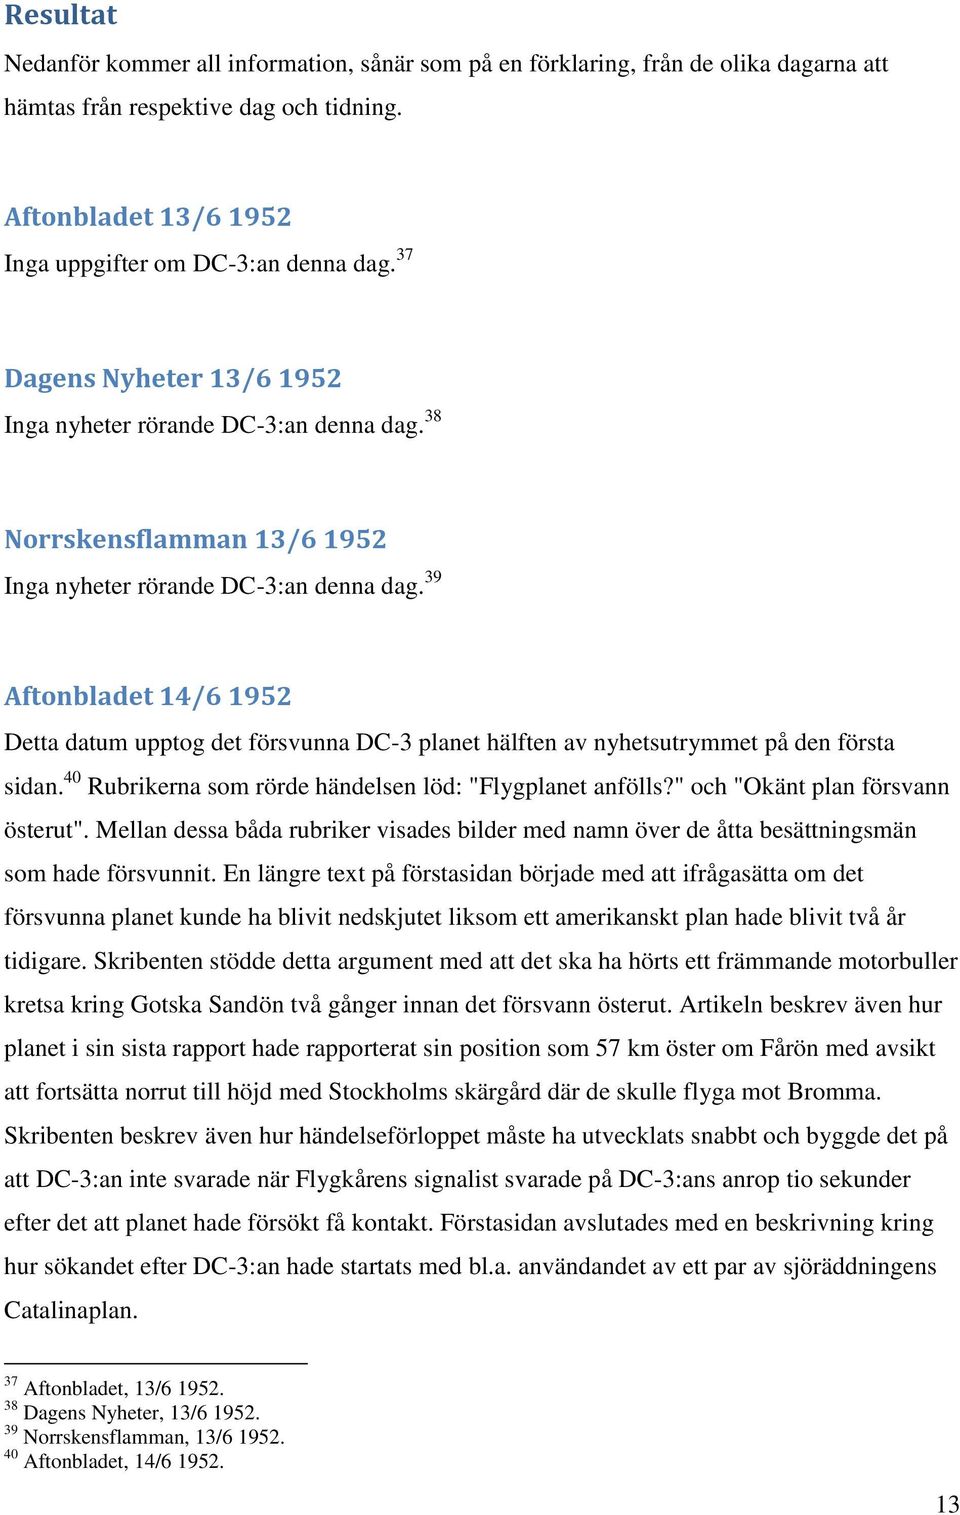 39 Aftonbladet 14/6 1952 Detta datum upptog det försvunna DC-3 planet hälften av nyhetsutrymmet på den första sidan. 40 Rubrikerna som rörde händelsen löd: "Flygplanet anfölls?